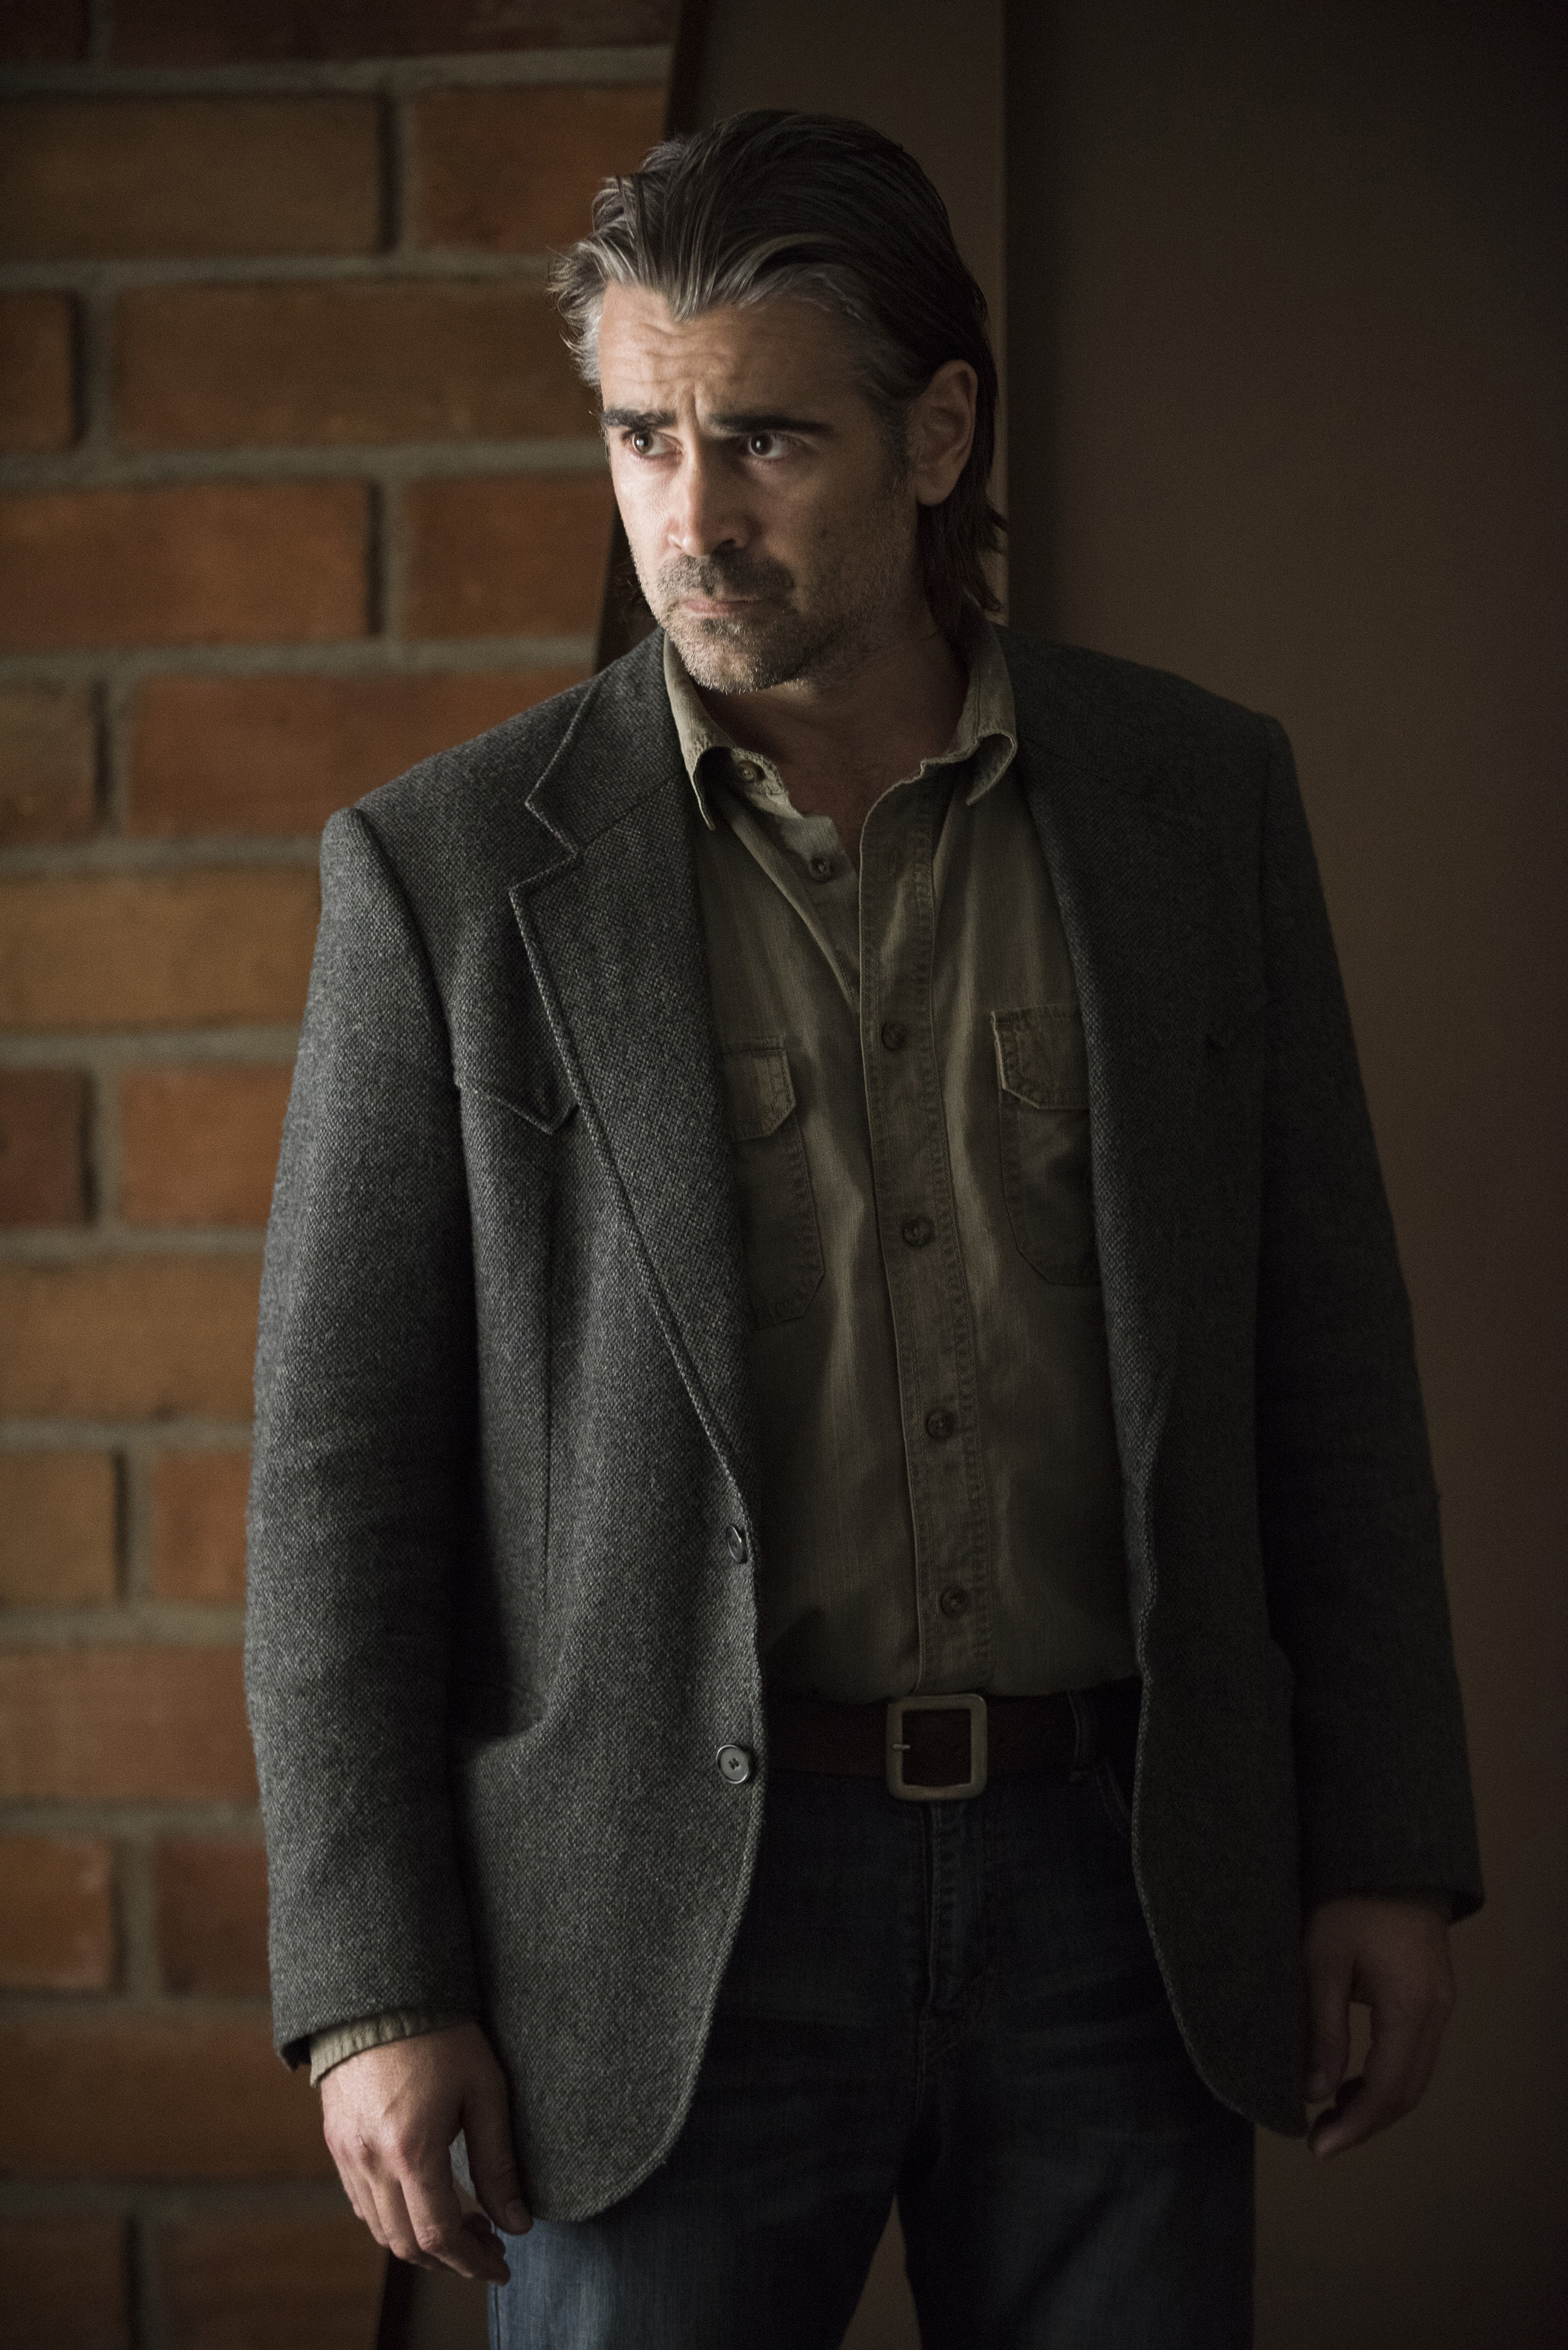 Still of Colin Farrell in True Detective (2014)